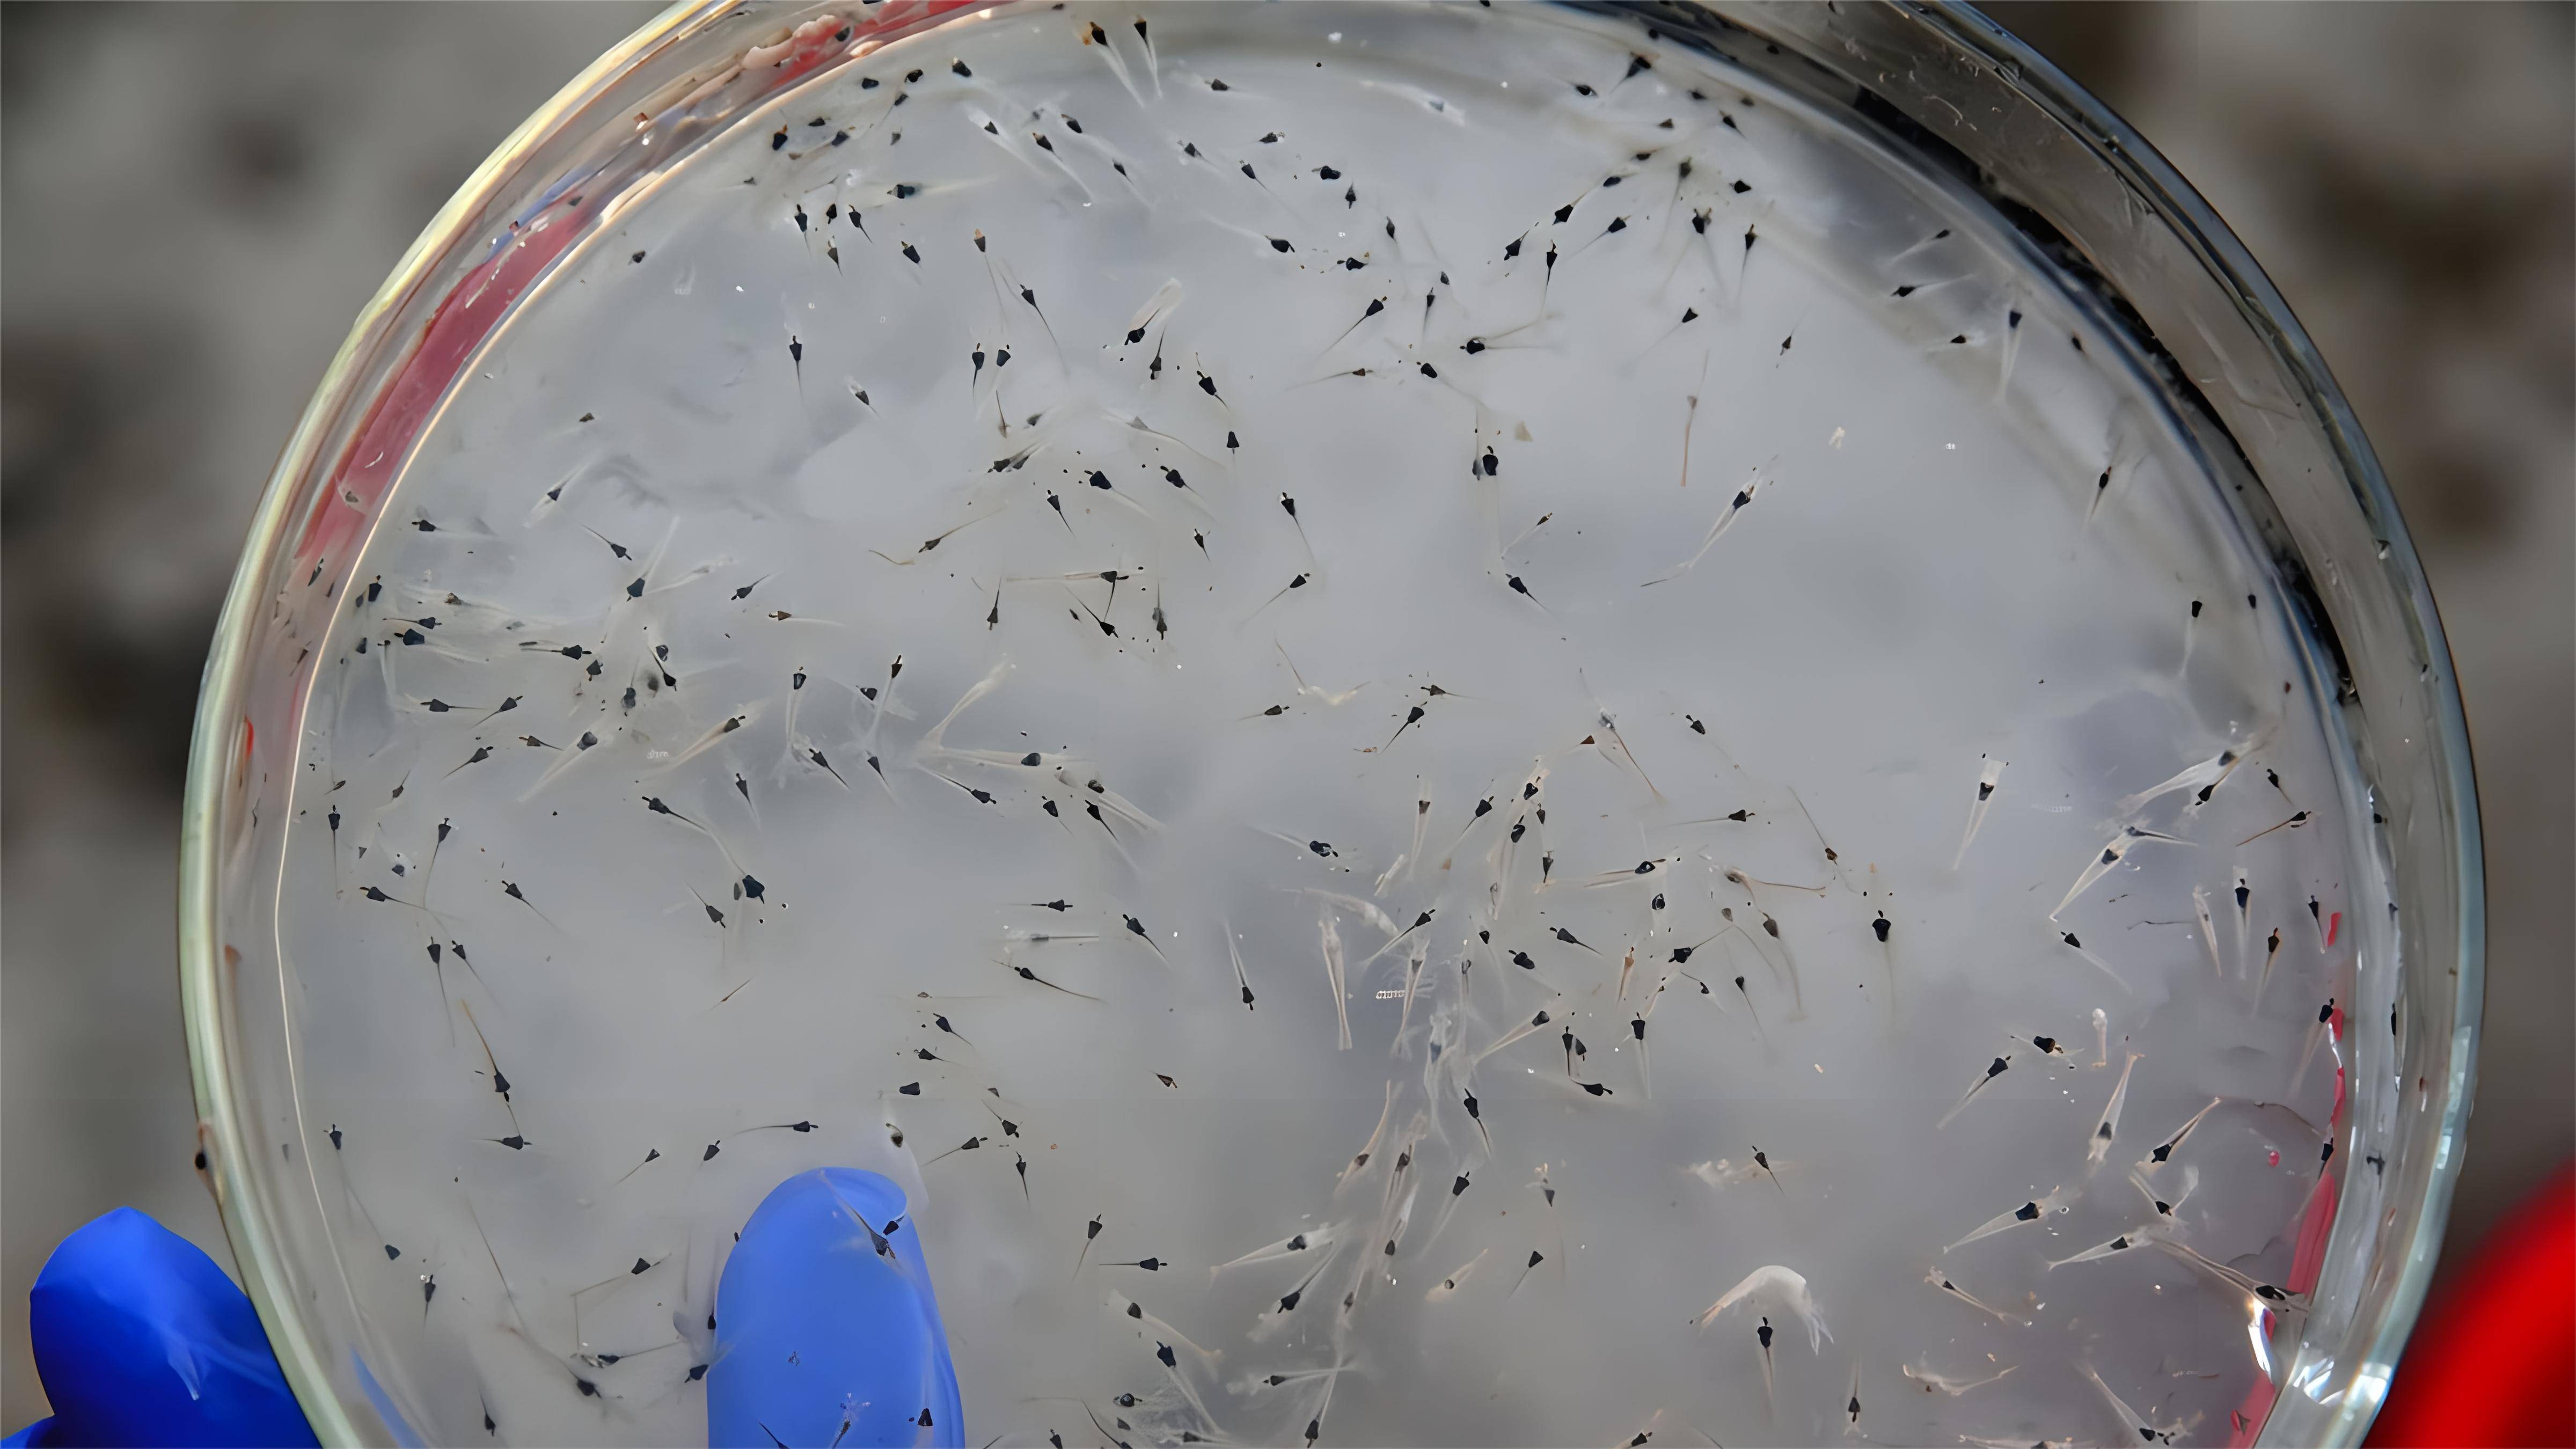 南美白对虾养殖用什么肥料肥水好?虾苗期怎么用肥水产品效果好?